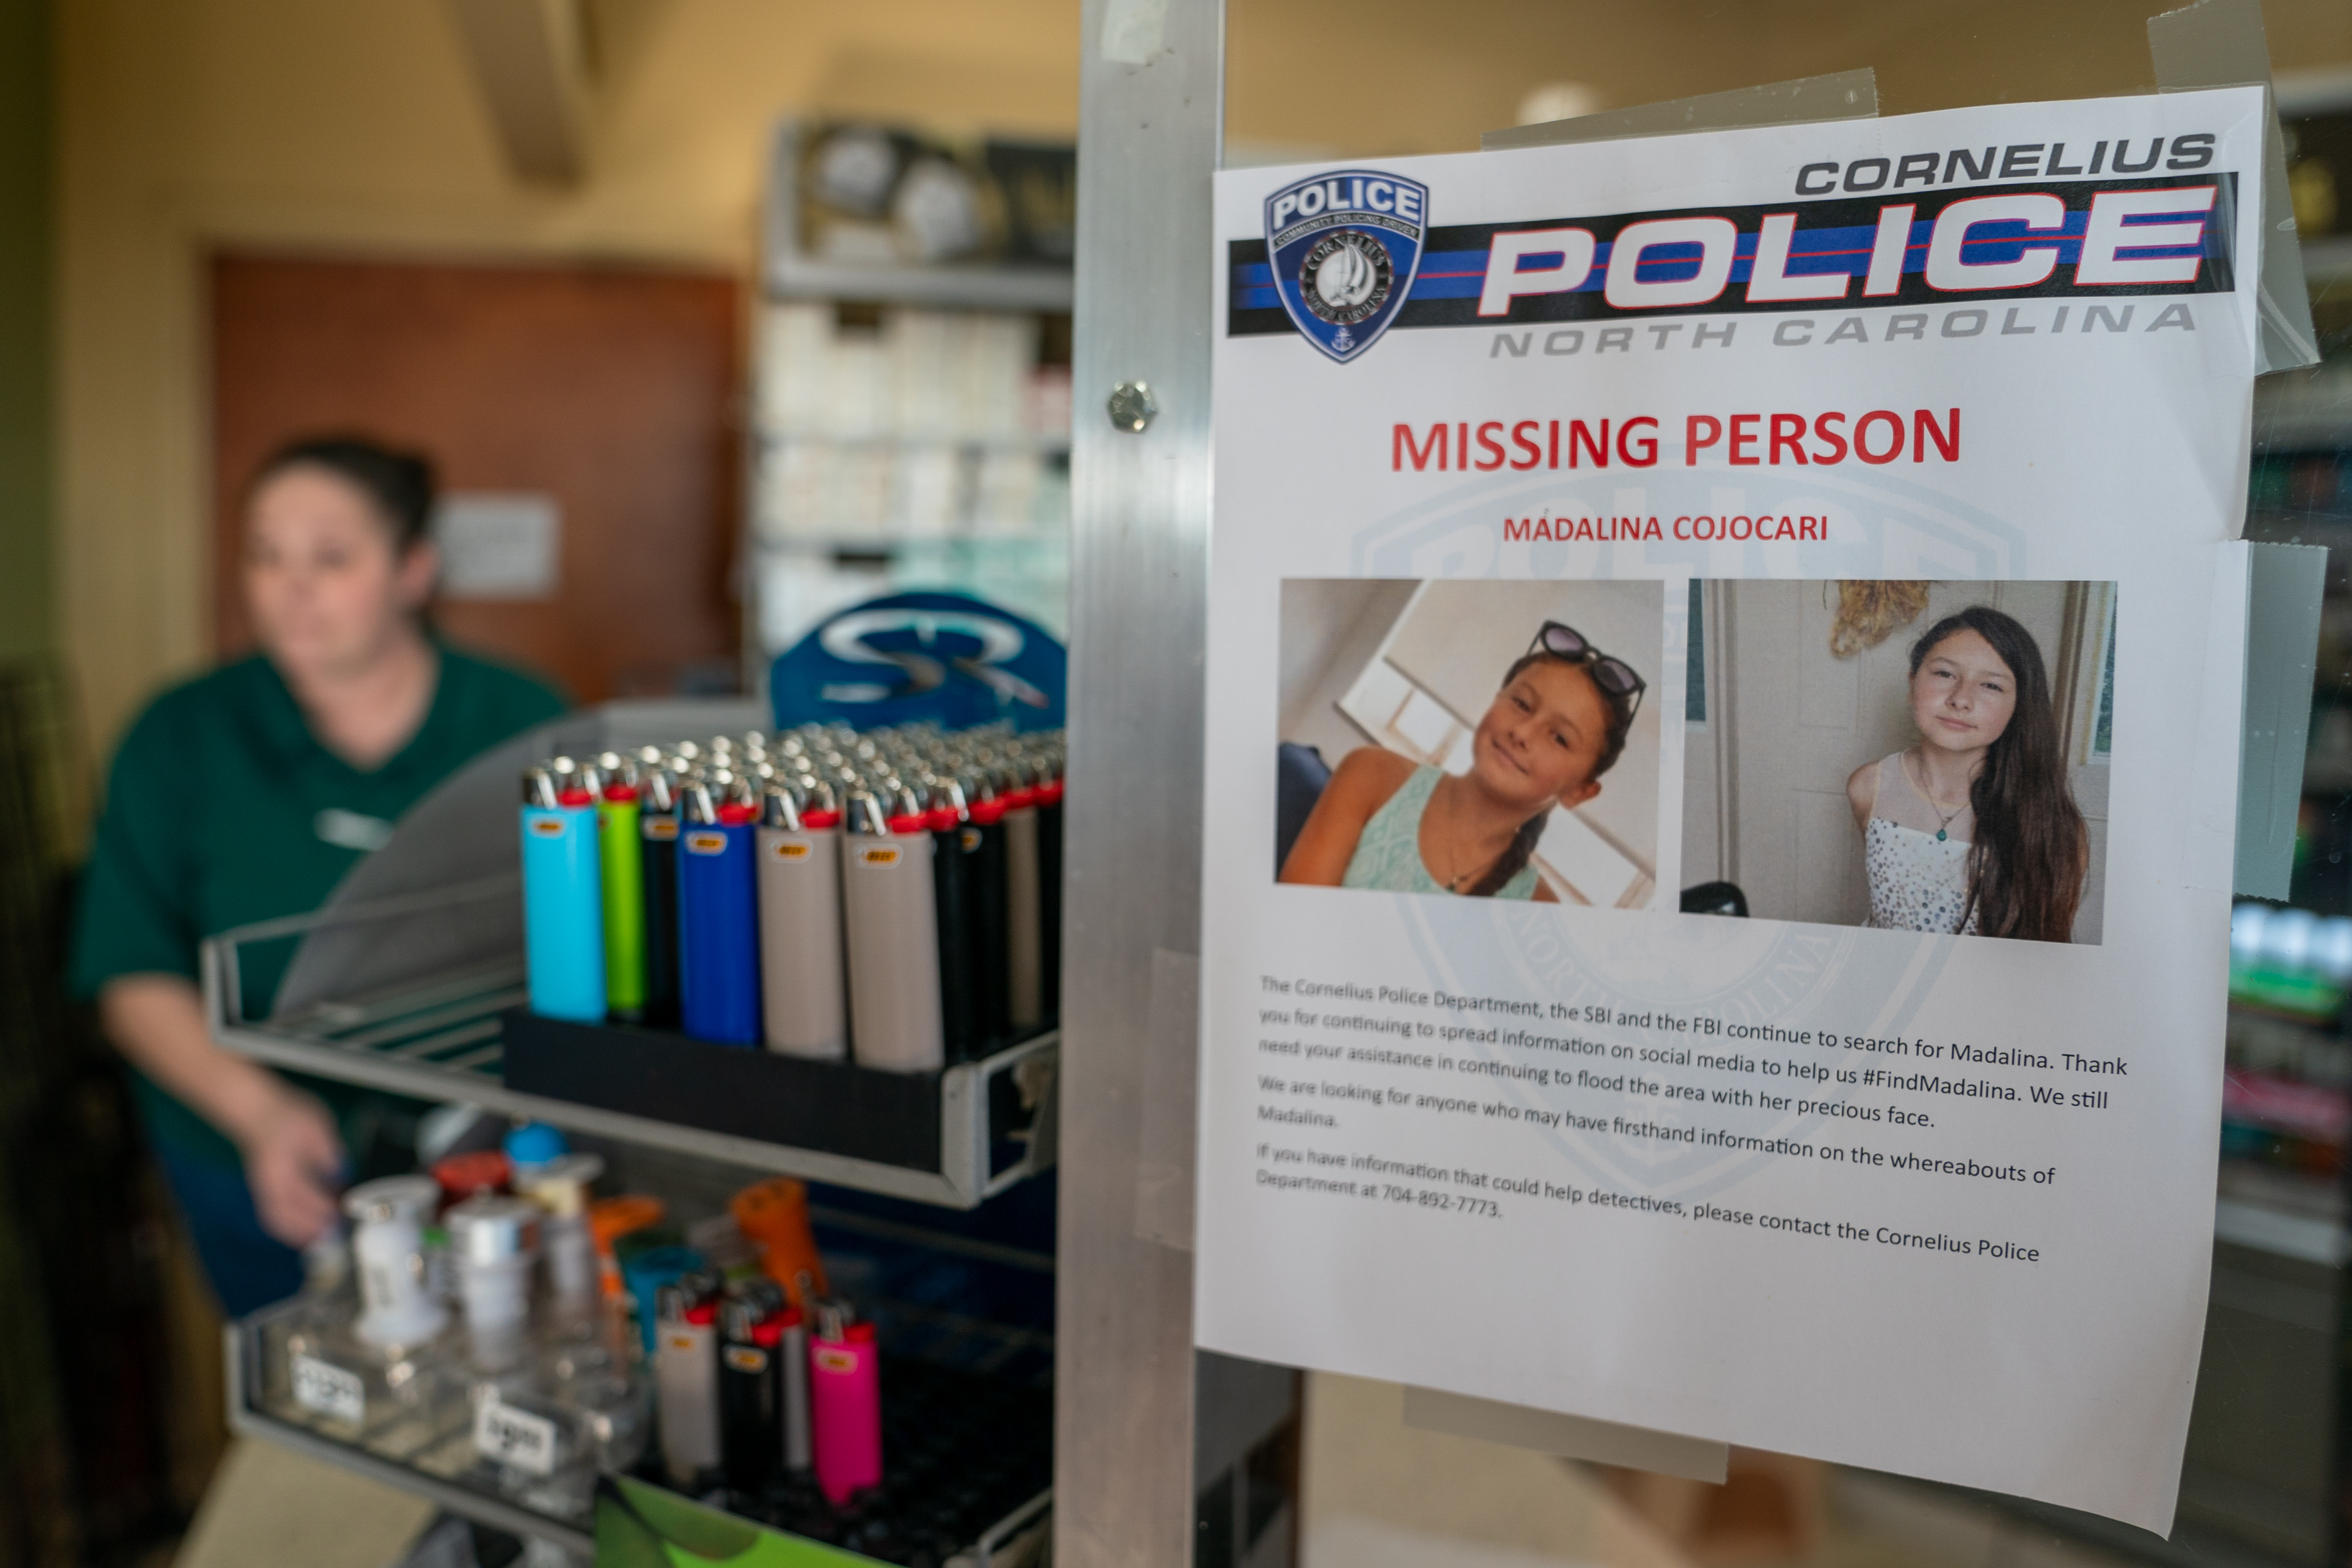 Mehrere Geschäfte in der Gegend, darunter die Cashion's-Tankstelle in der Nähe von Madlina Cojocaris Haus, haben Flugblätter in der Hoffnung aufgehängt, dass das vermisste Mädchen gefunden wird